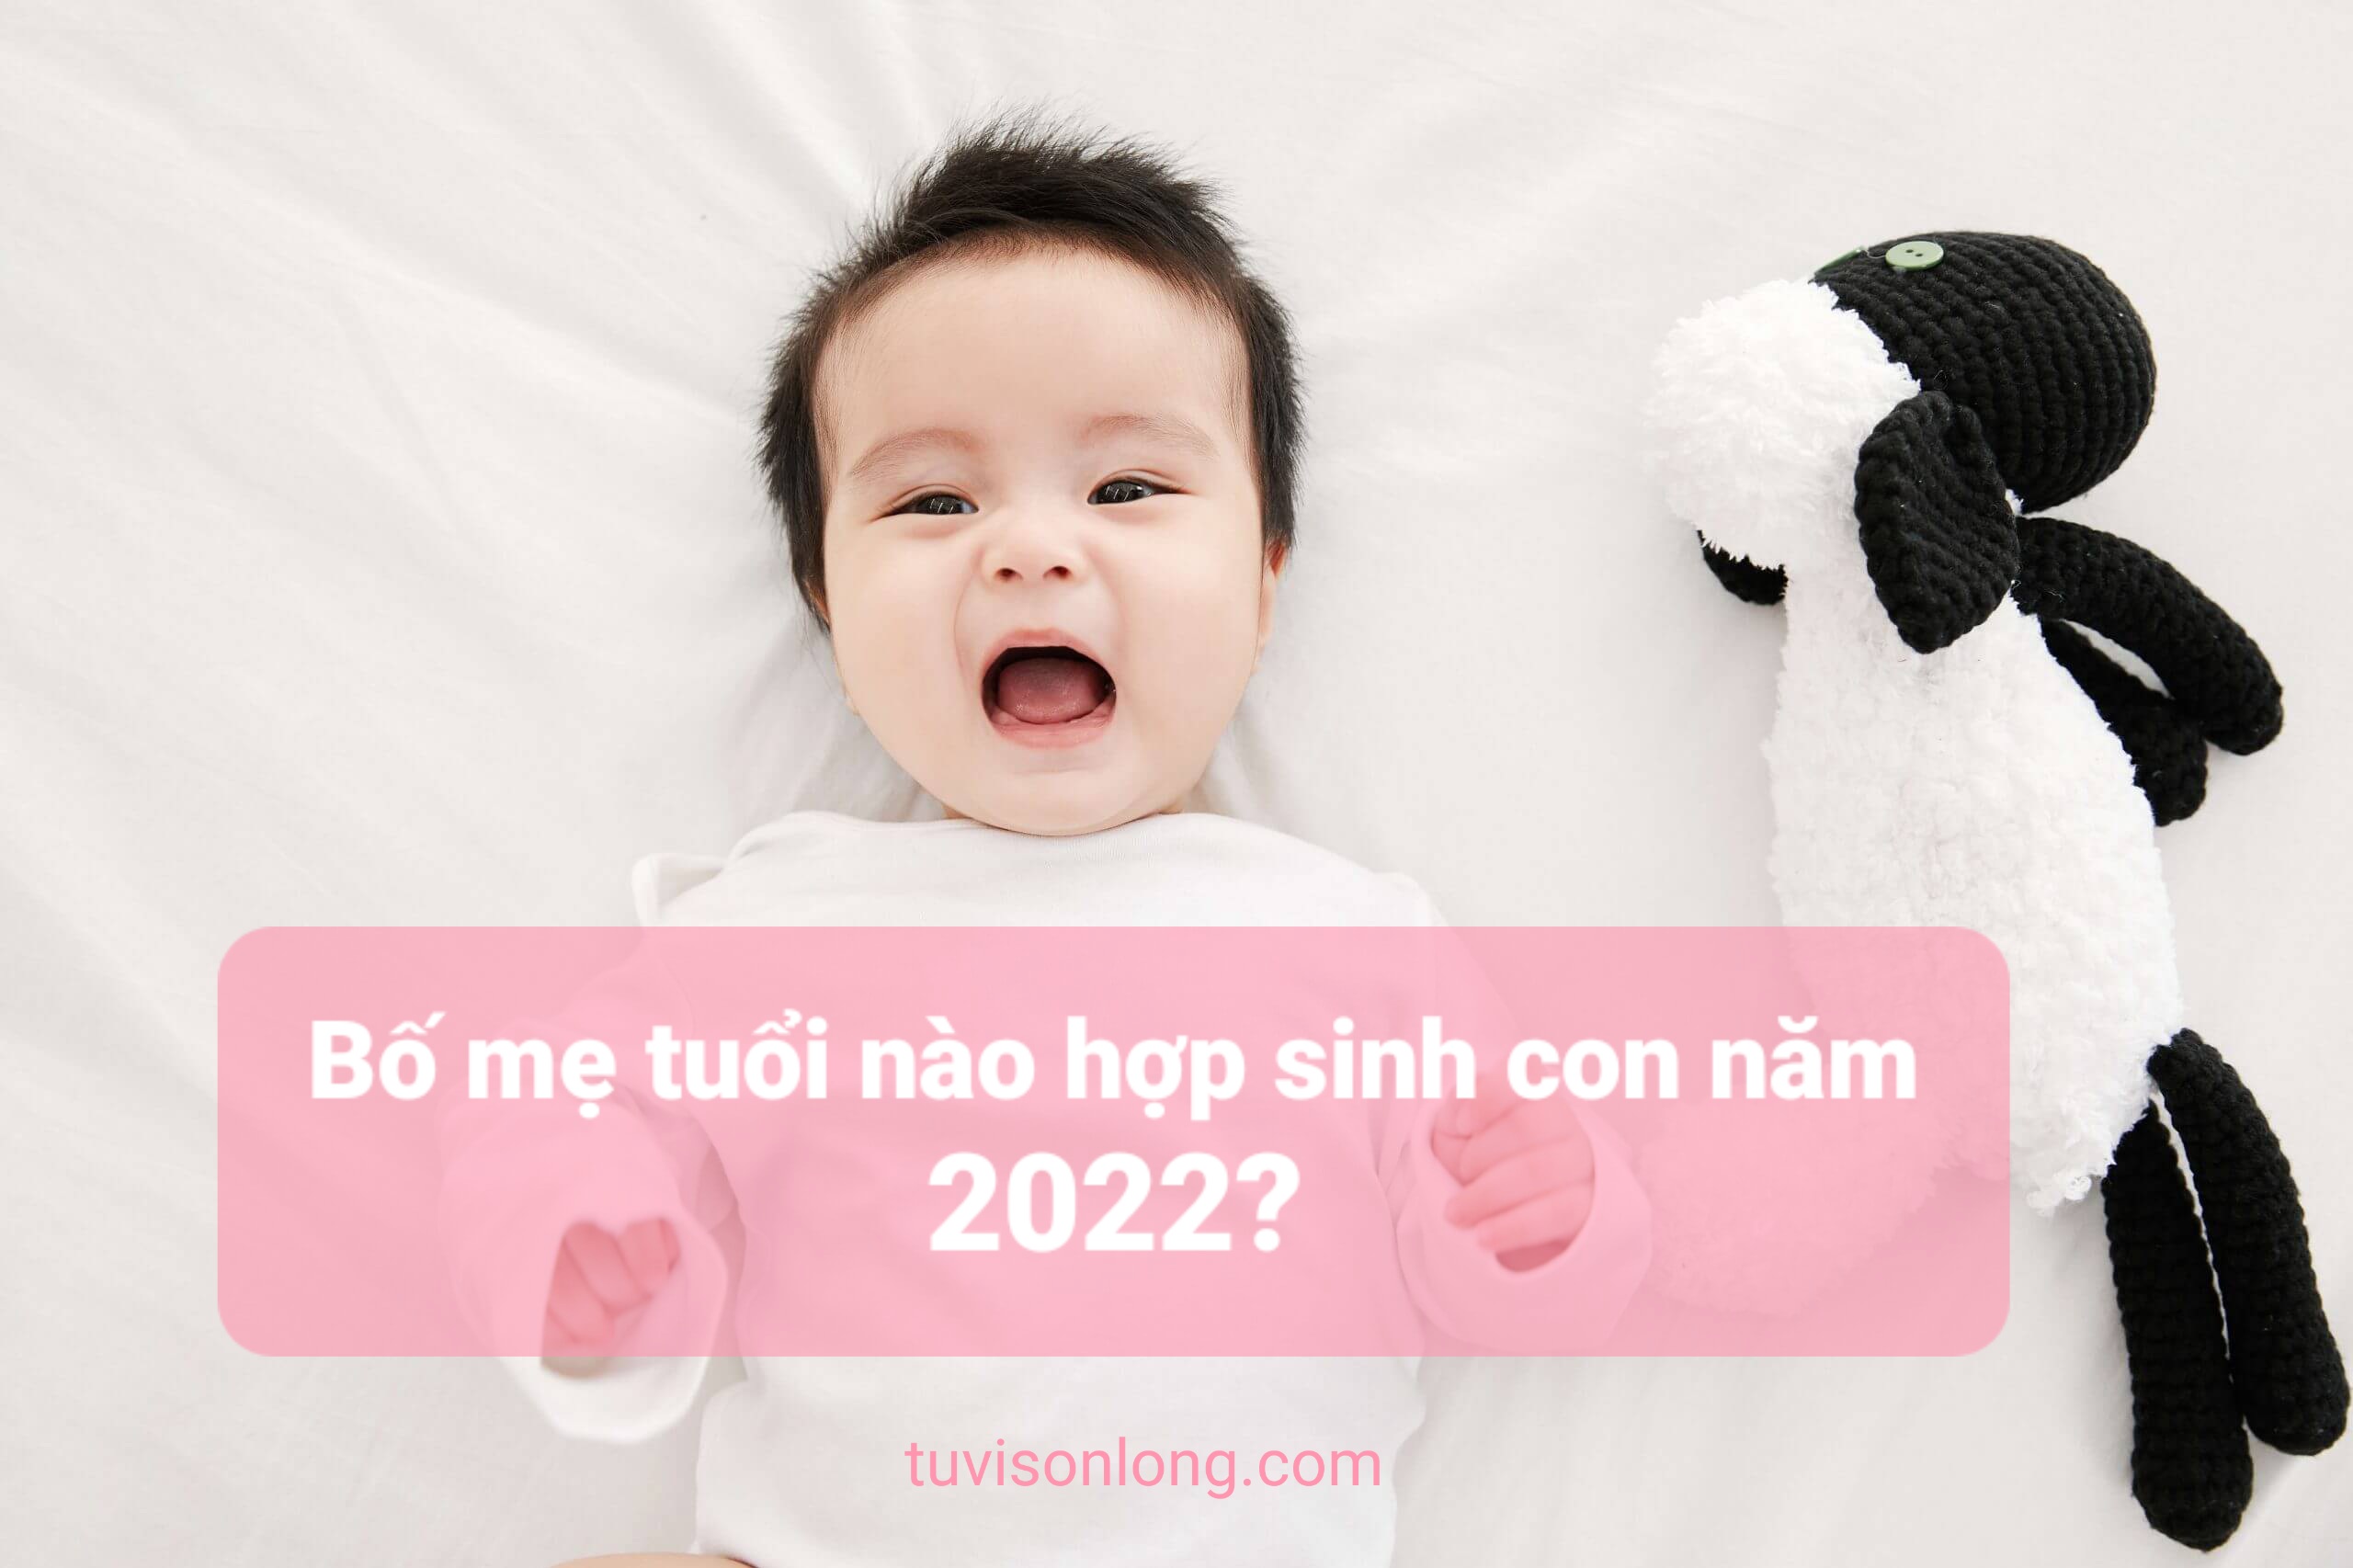 Tuoi-nao-hop-sinh-con-nam-2022